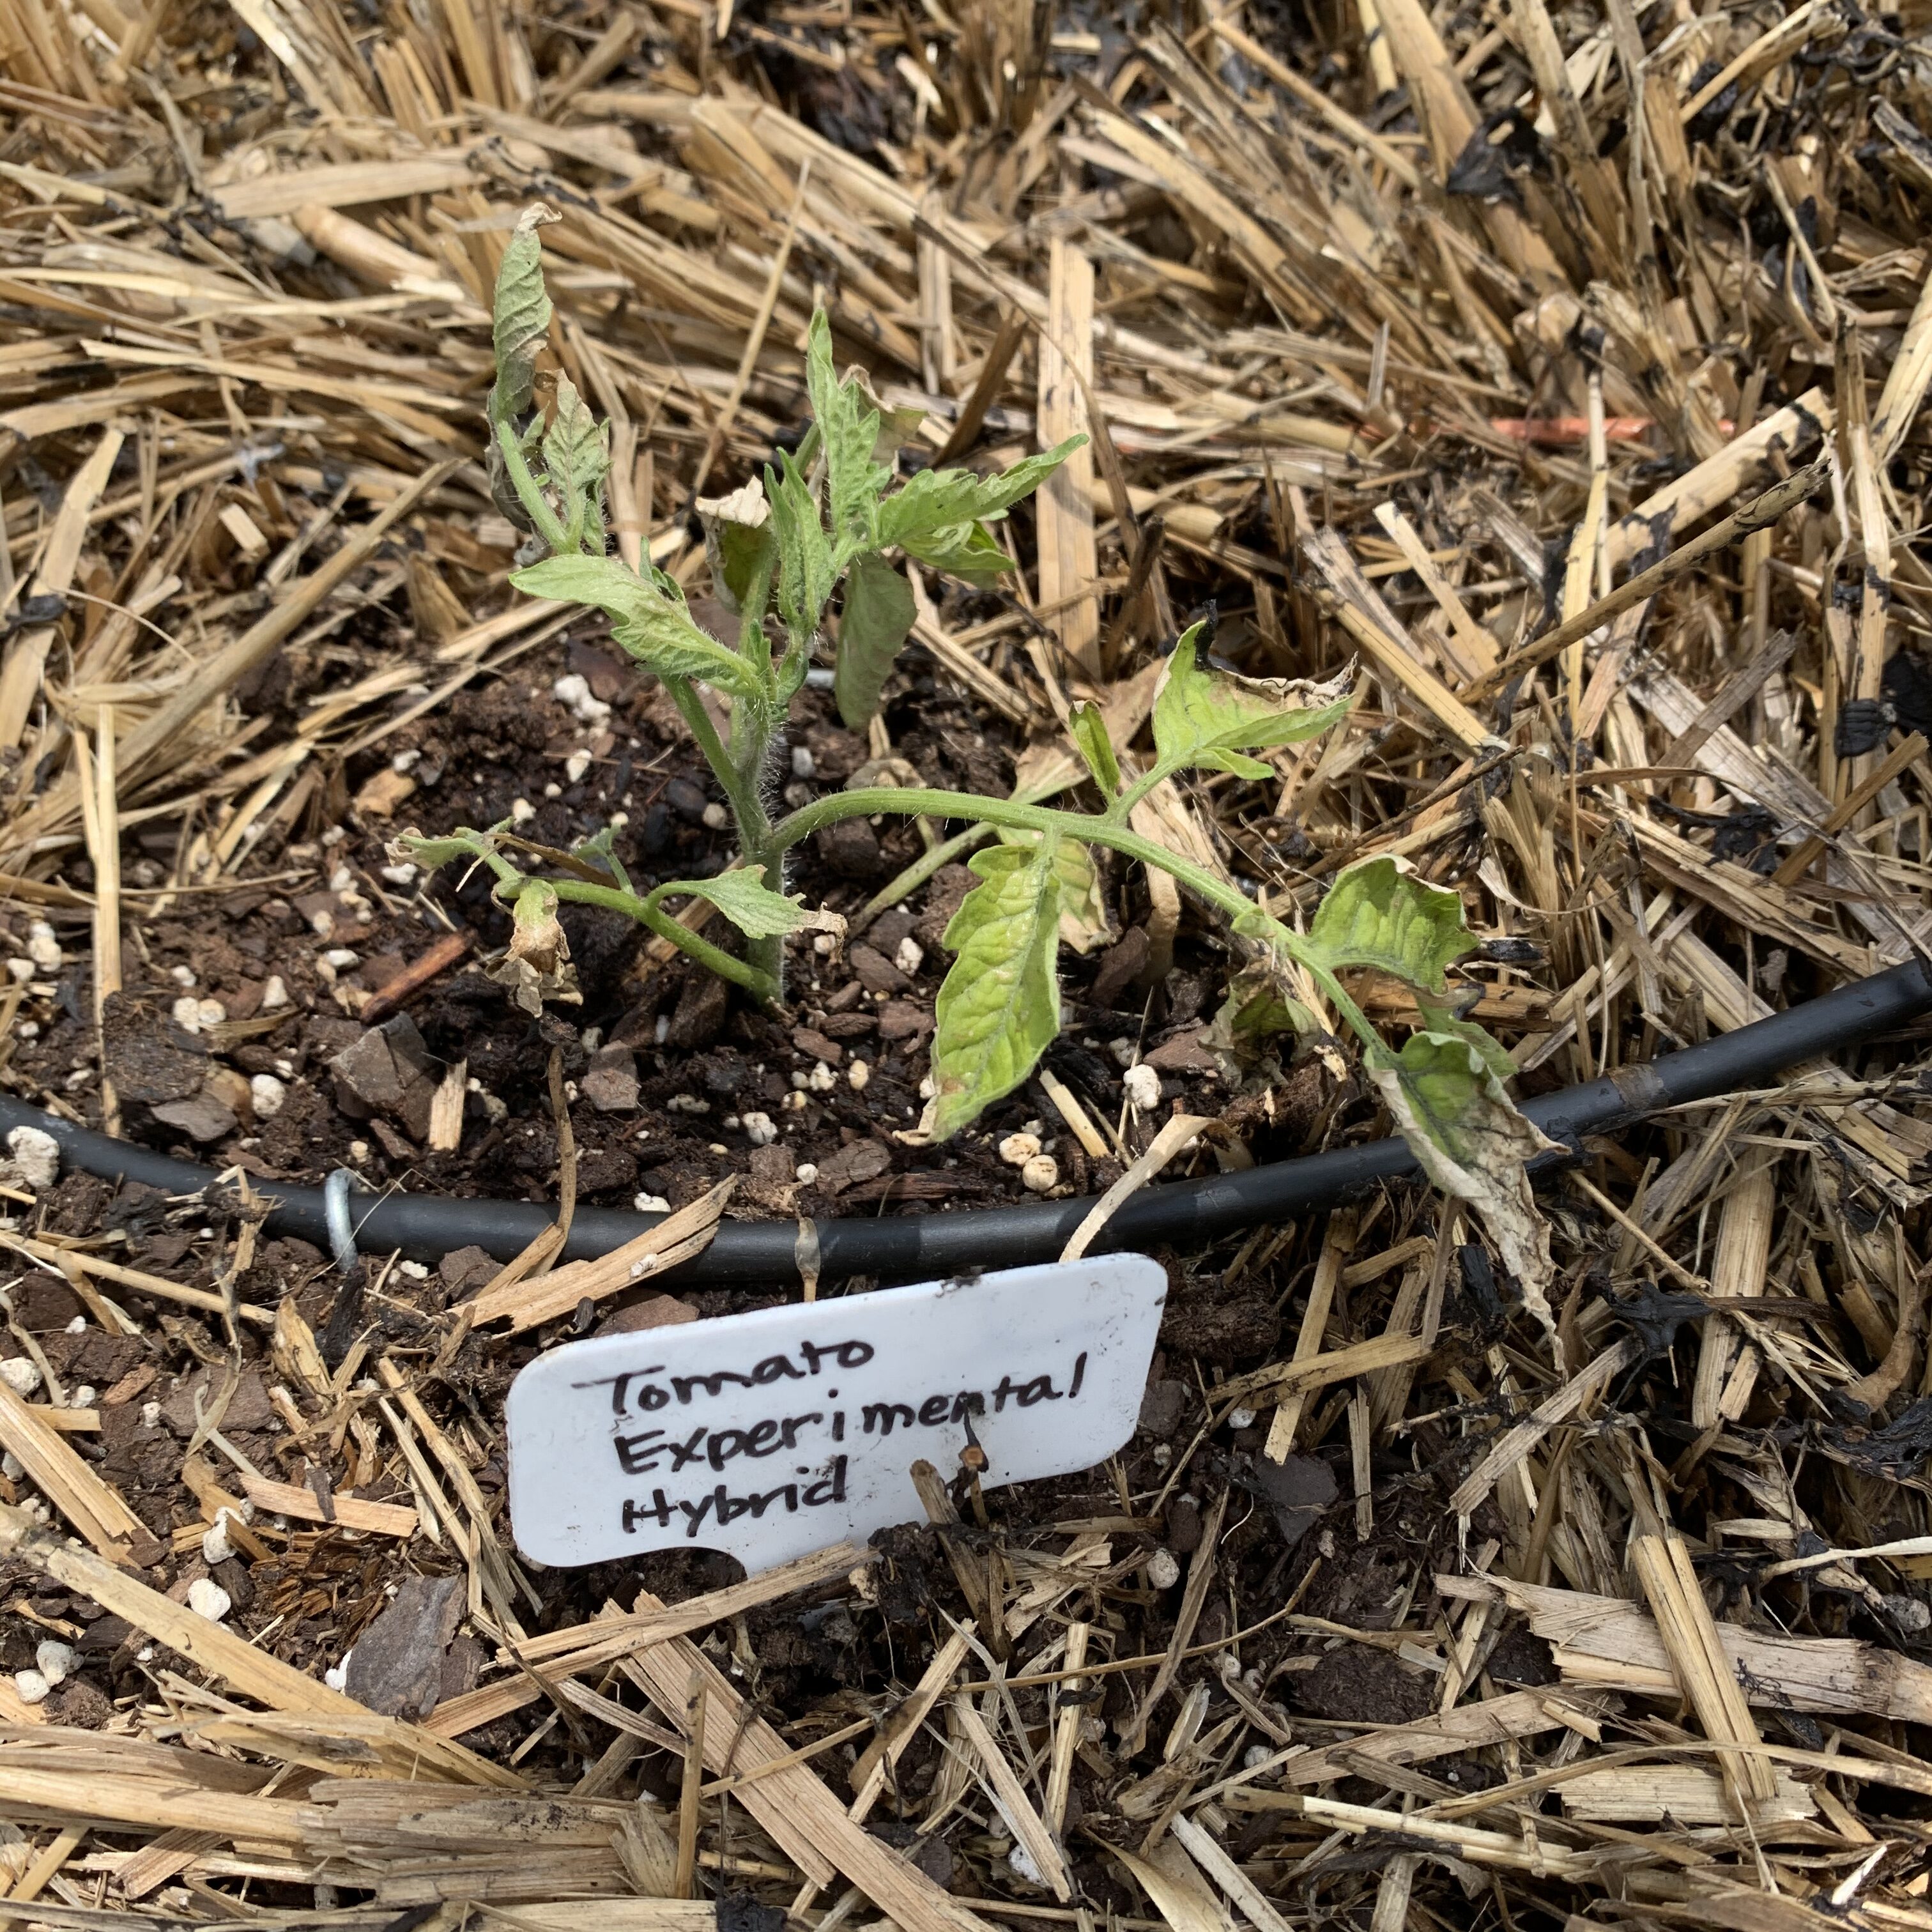 000A1561 4B2B 49E8 B581 C6A44E08EC75 Cucumbers planted!